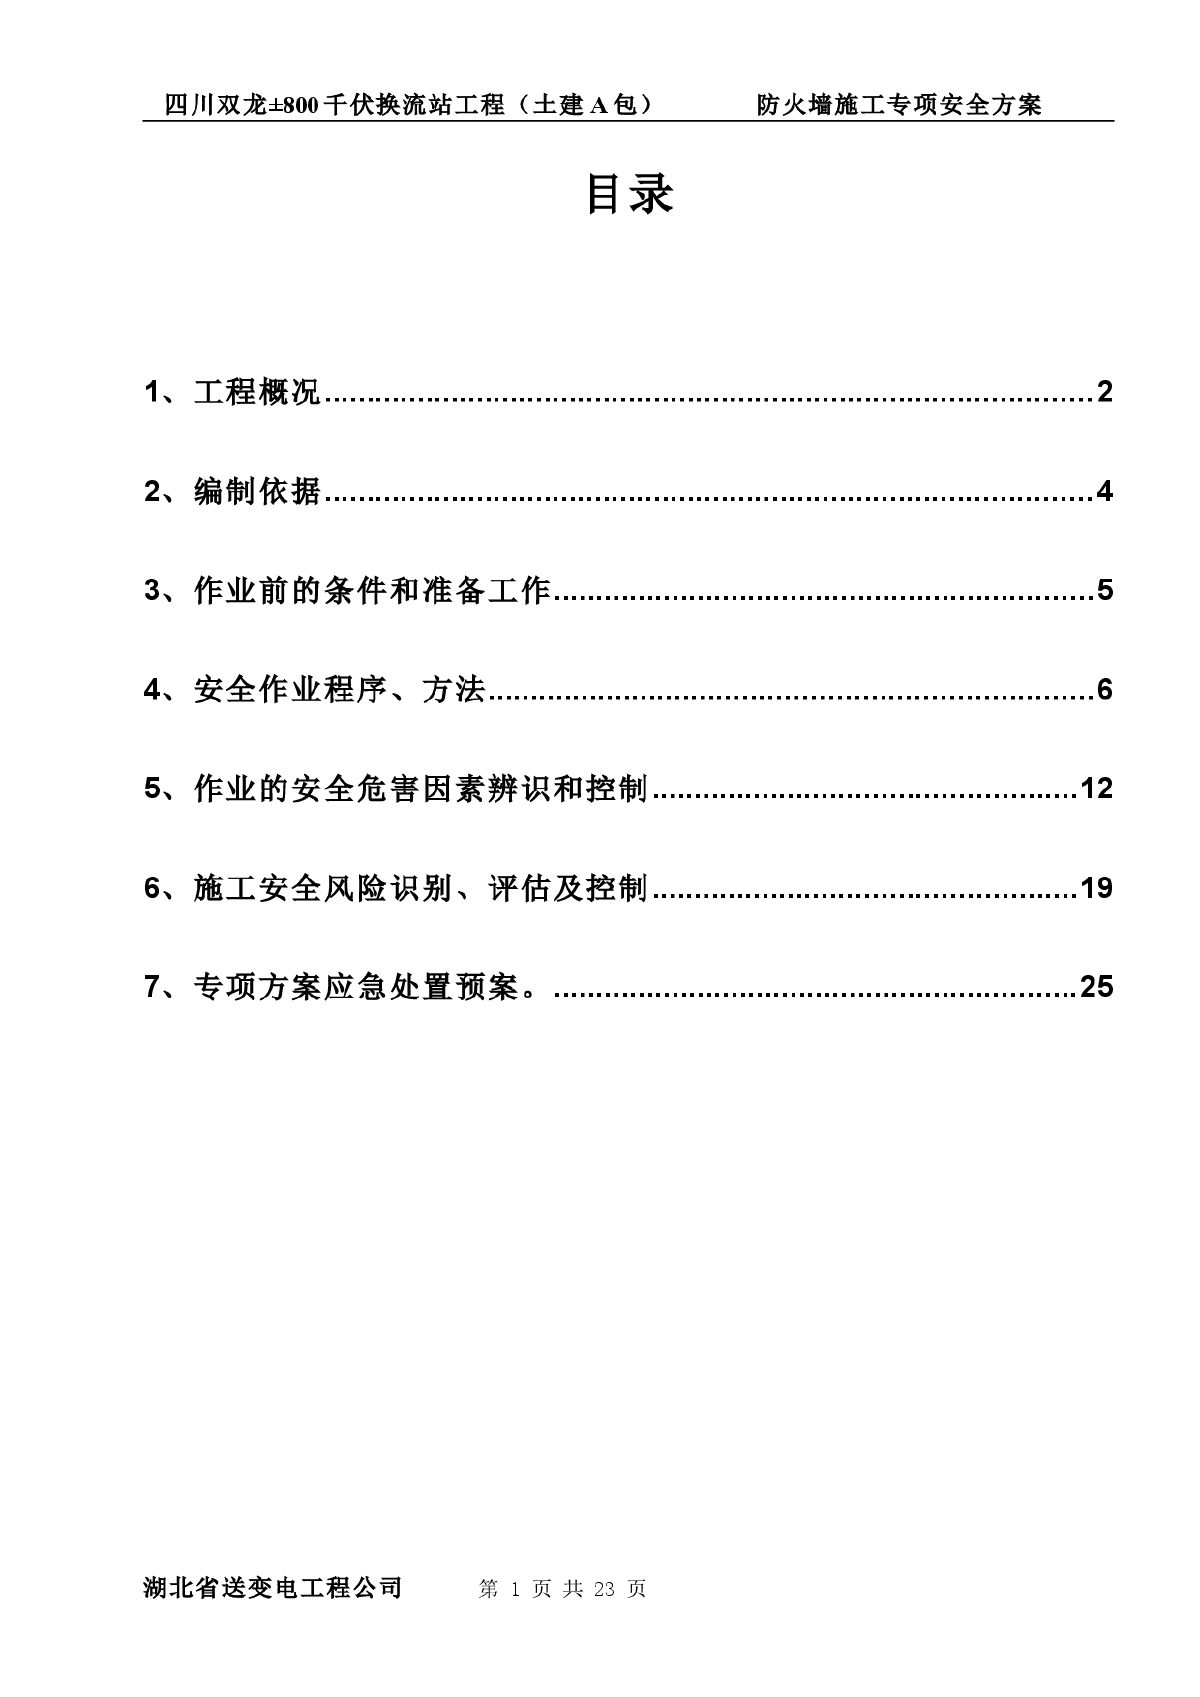 【四川】防火墙施工专项安全方案